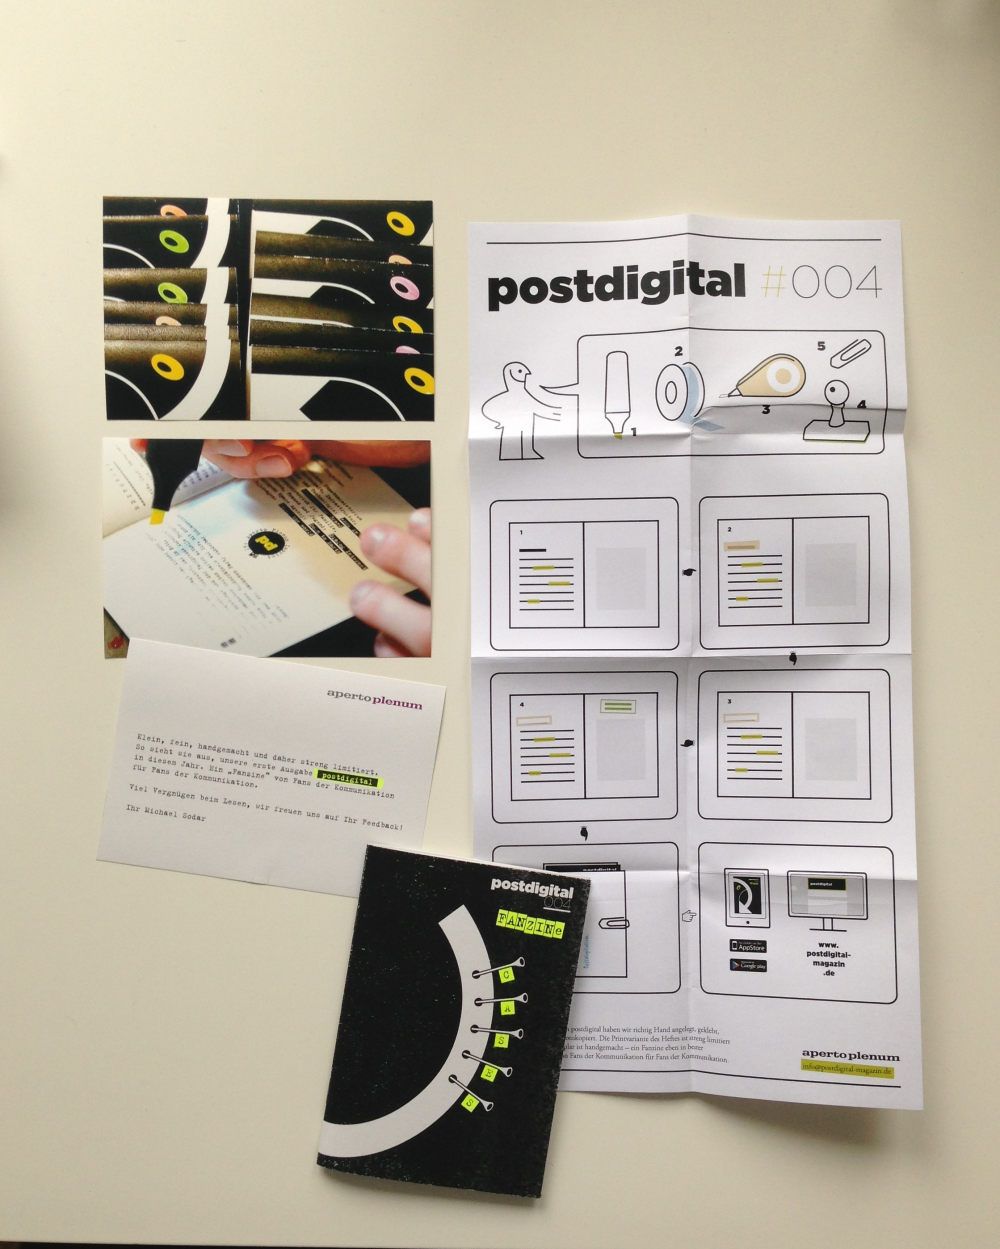 Postdigital 004 – Fanzine – Overview